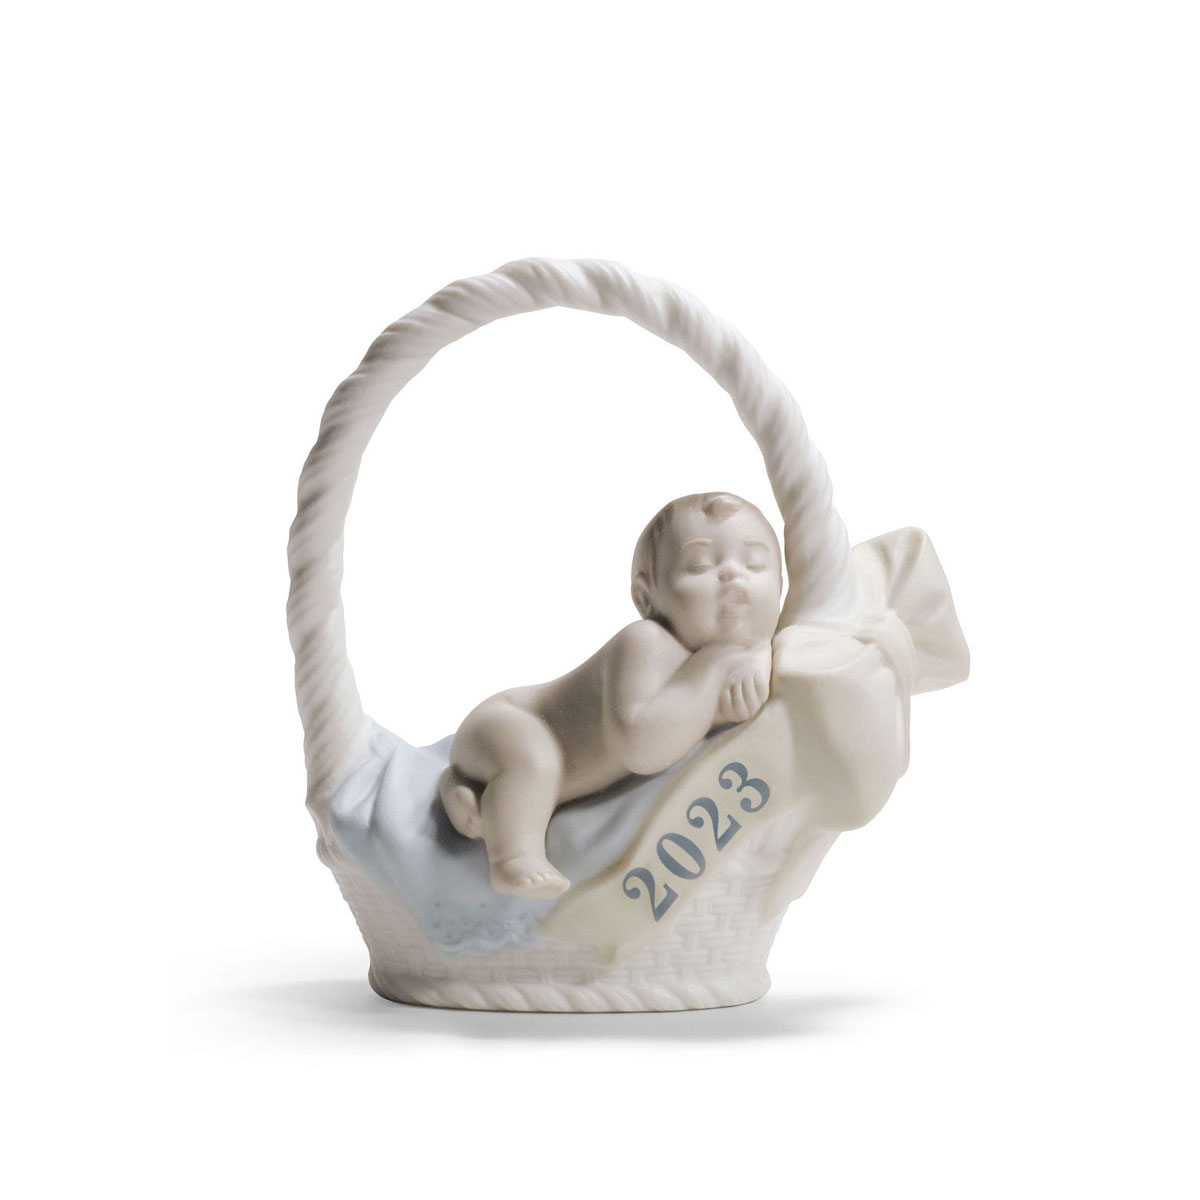 Lladro Born In 2023, Boy Figurine, Annual Edition